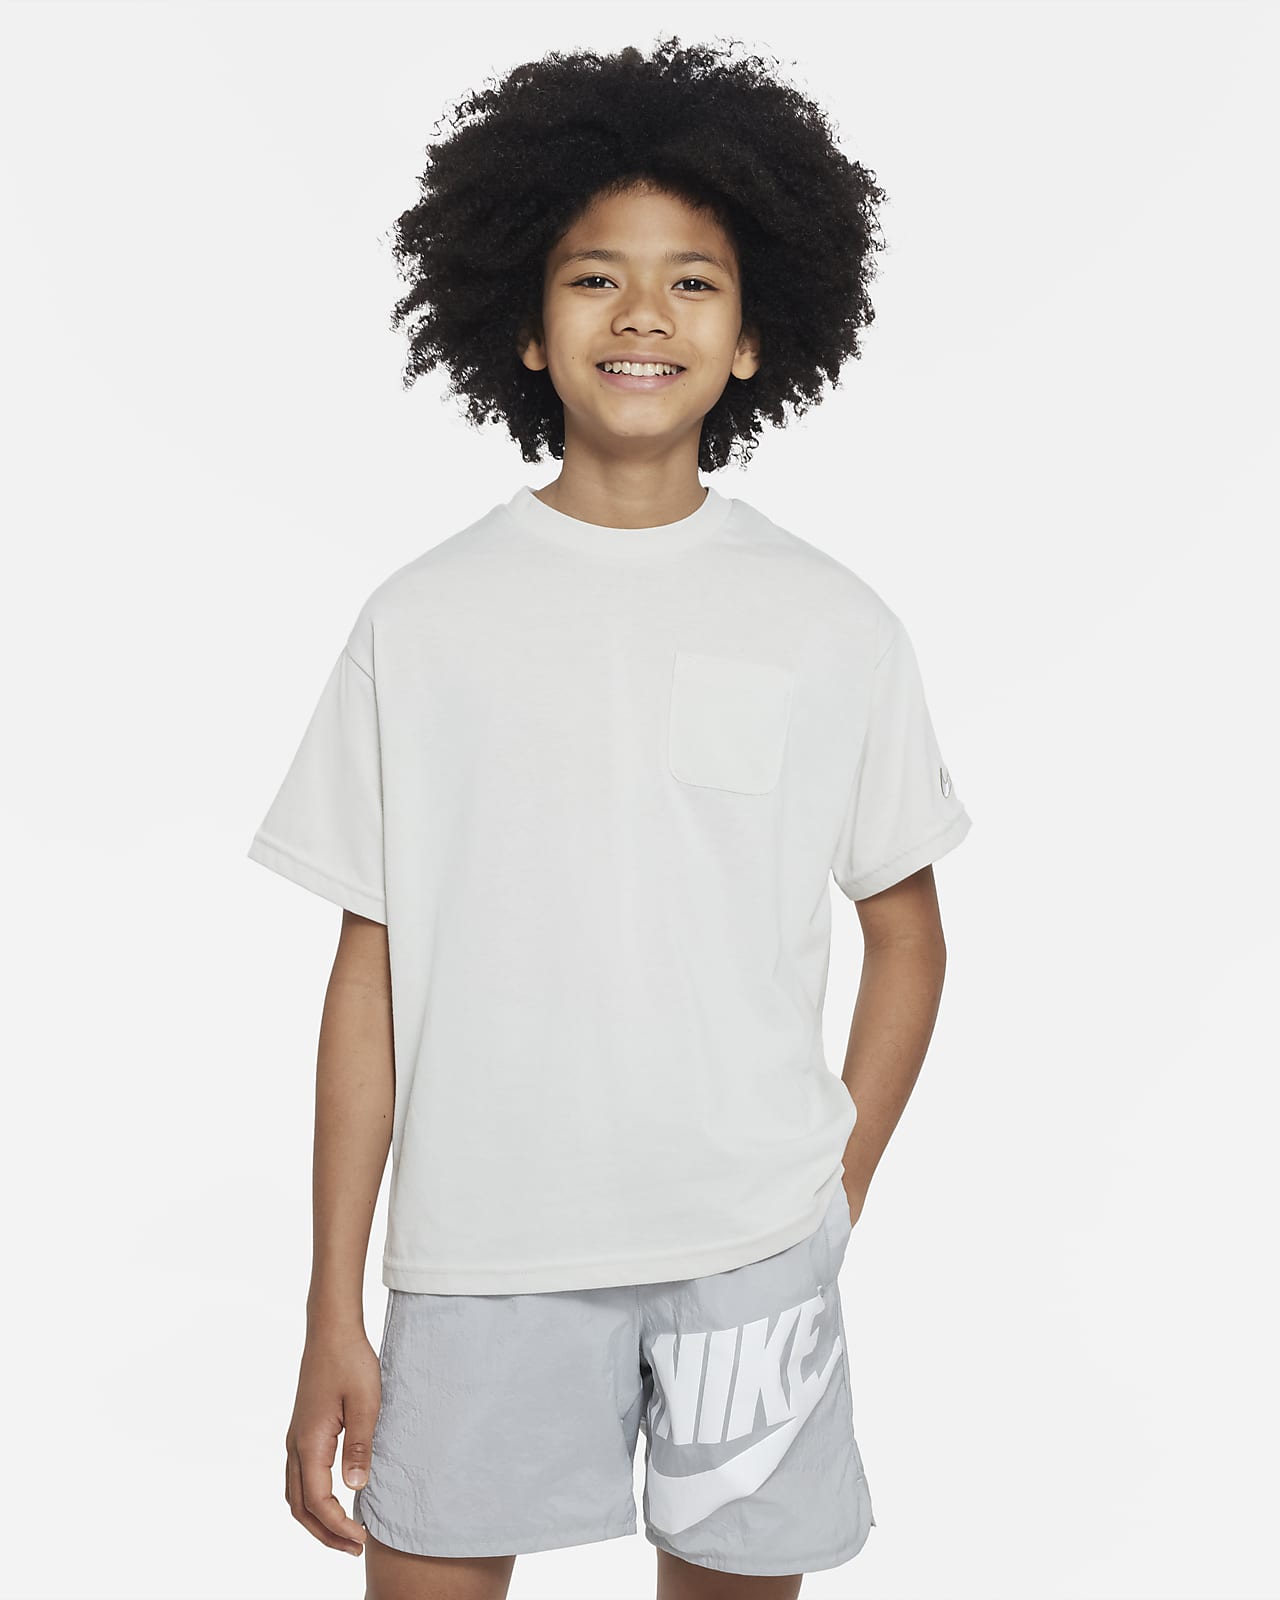 Nike Outdoor Play Older Kids' Short-Sleeve Top